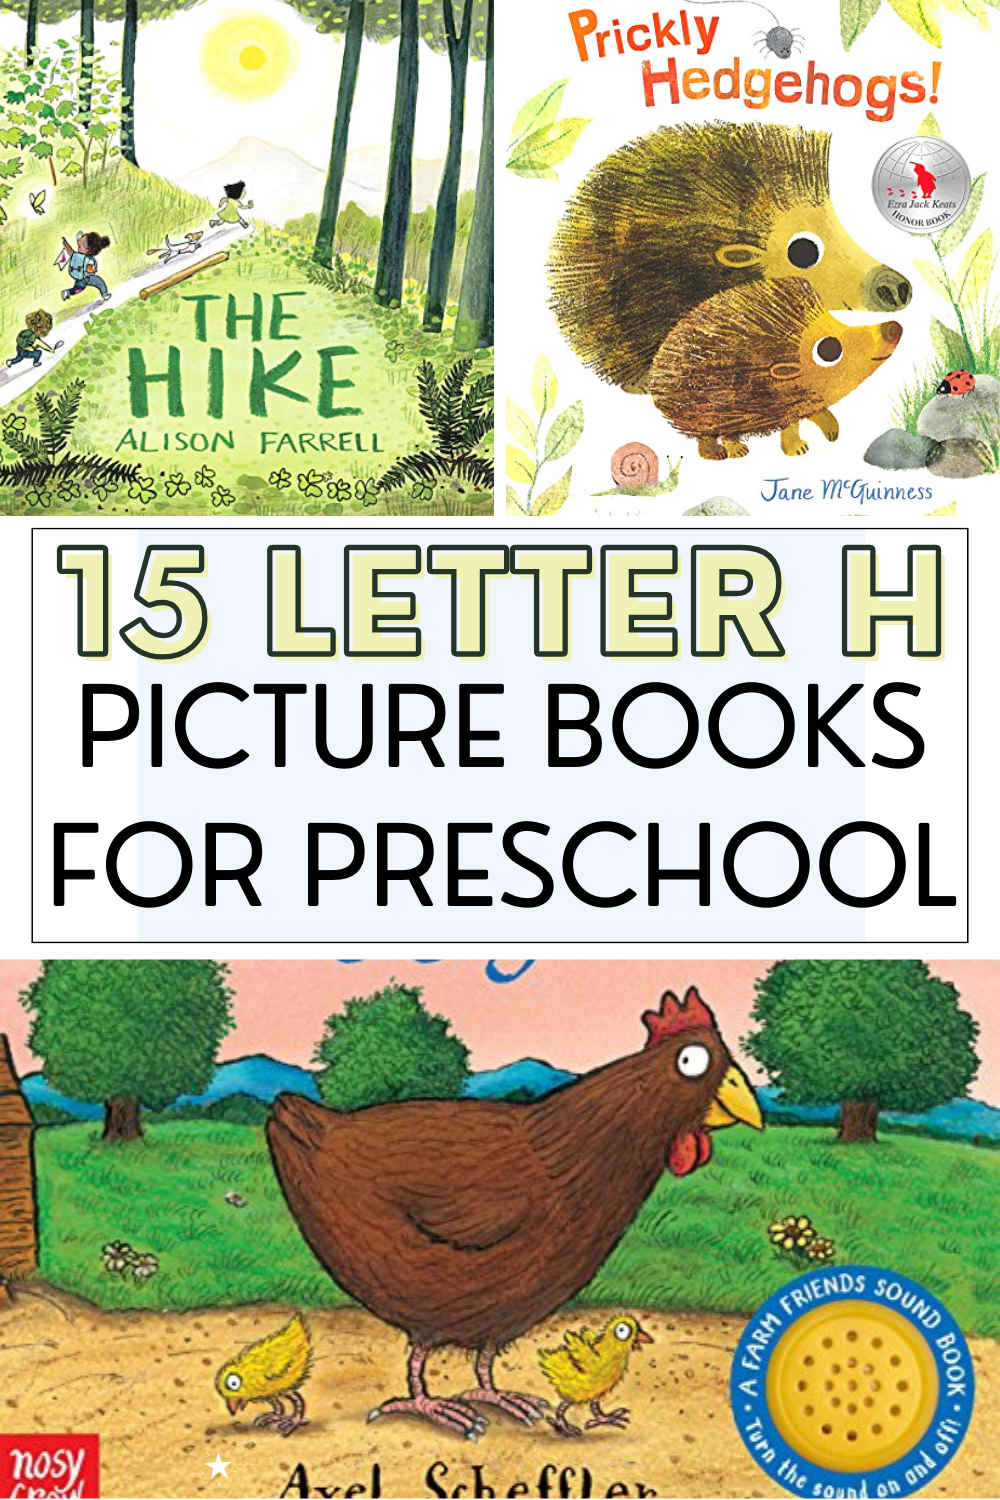 letter-h-book Letter H Books for Preschool